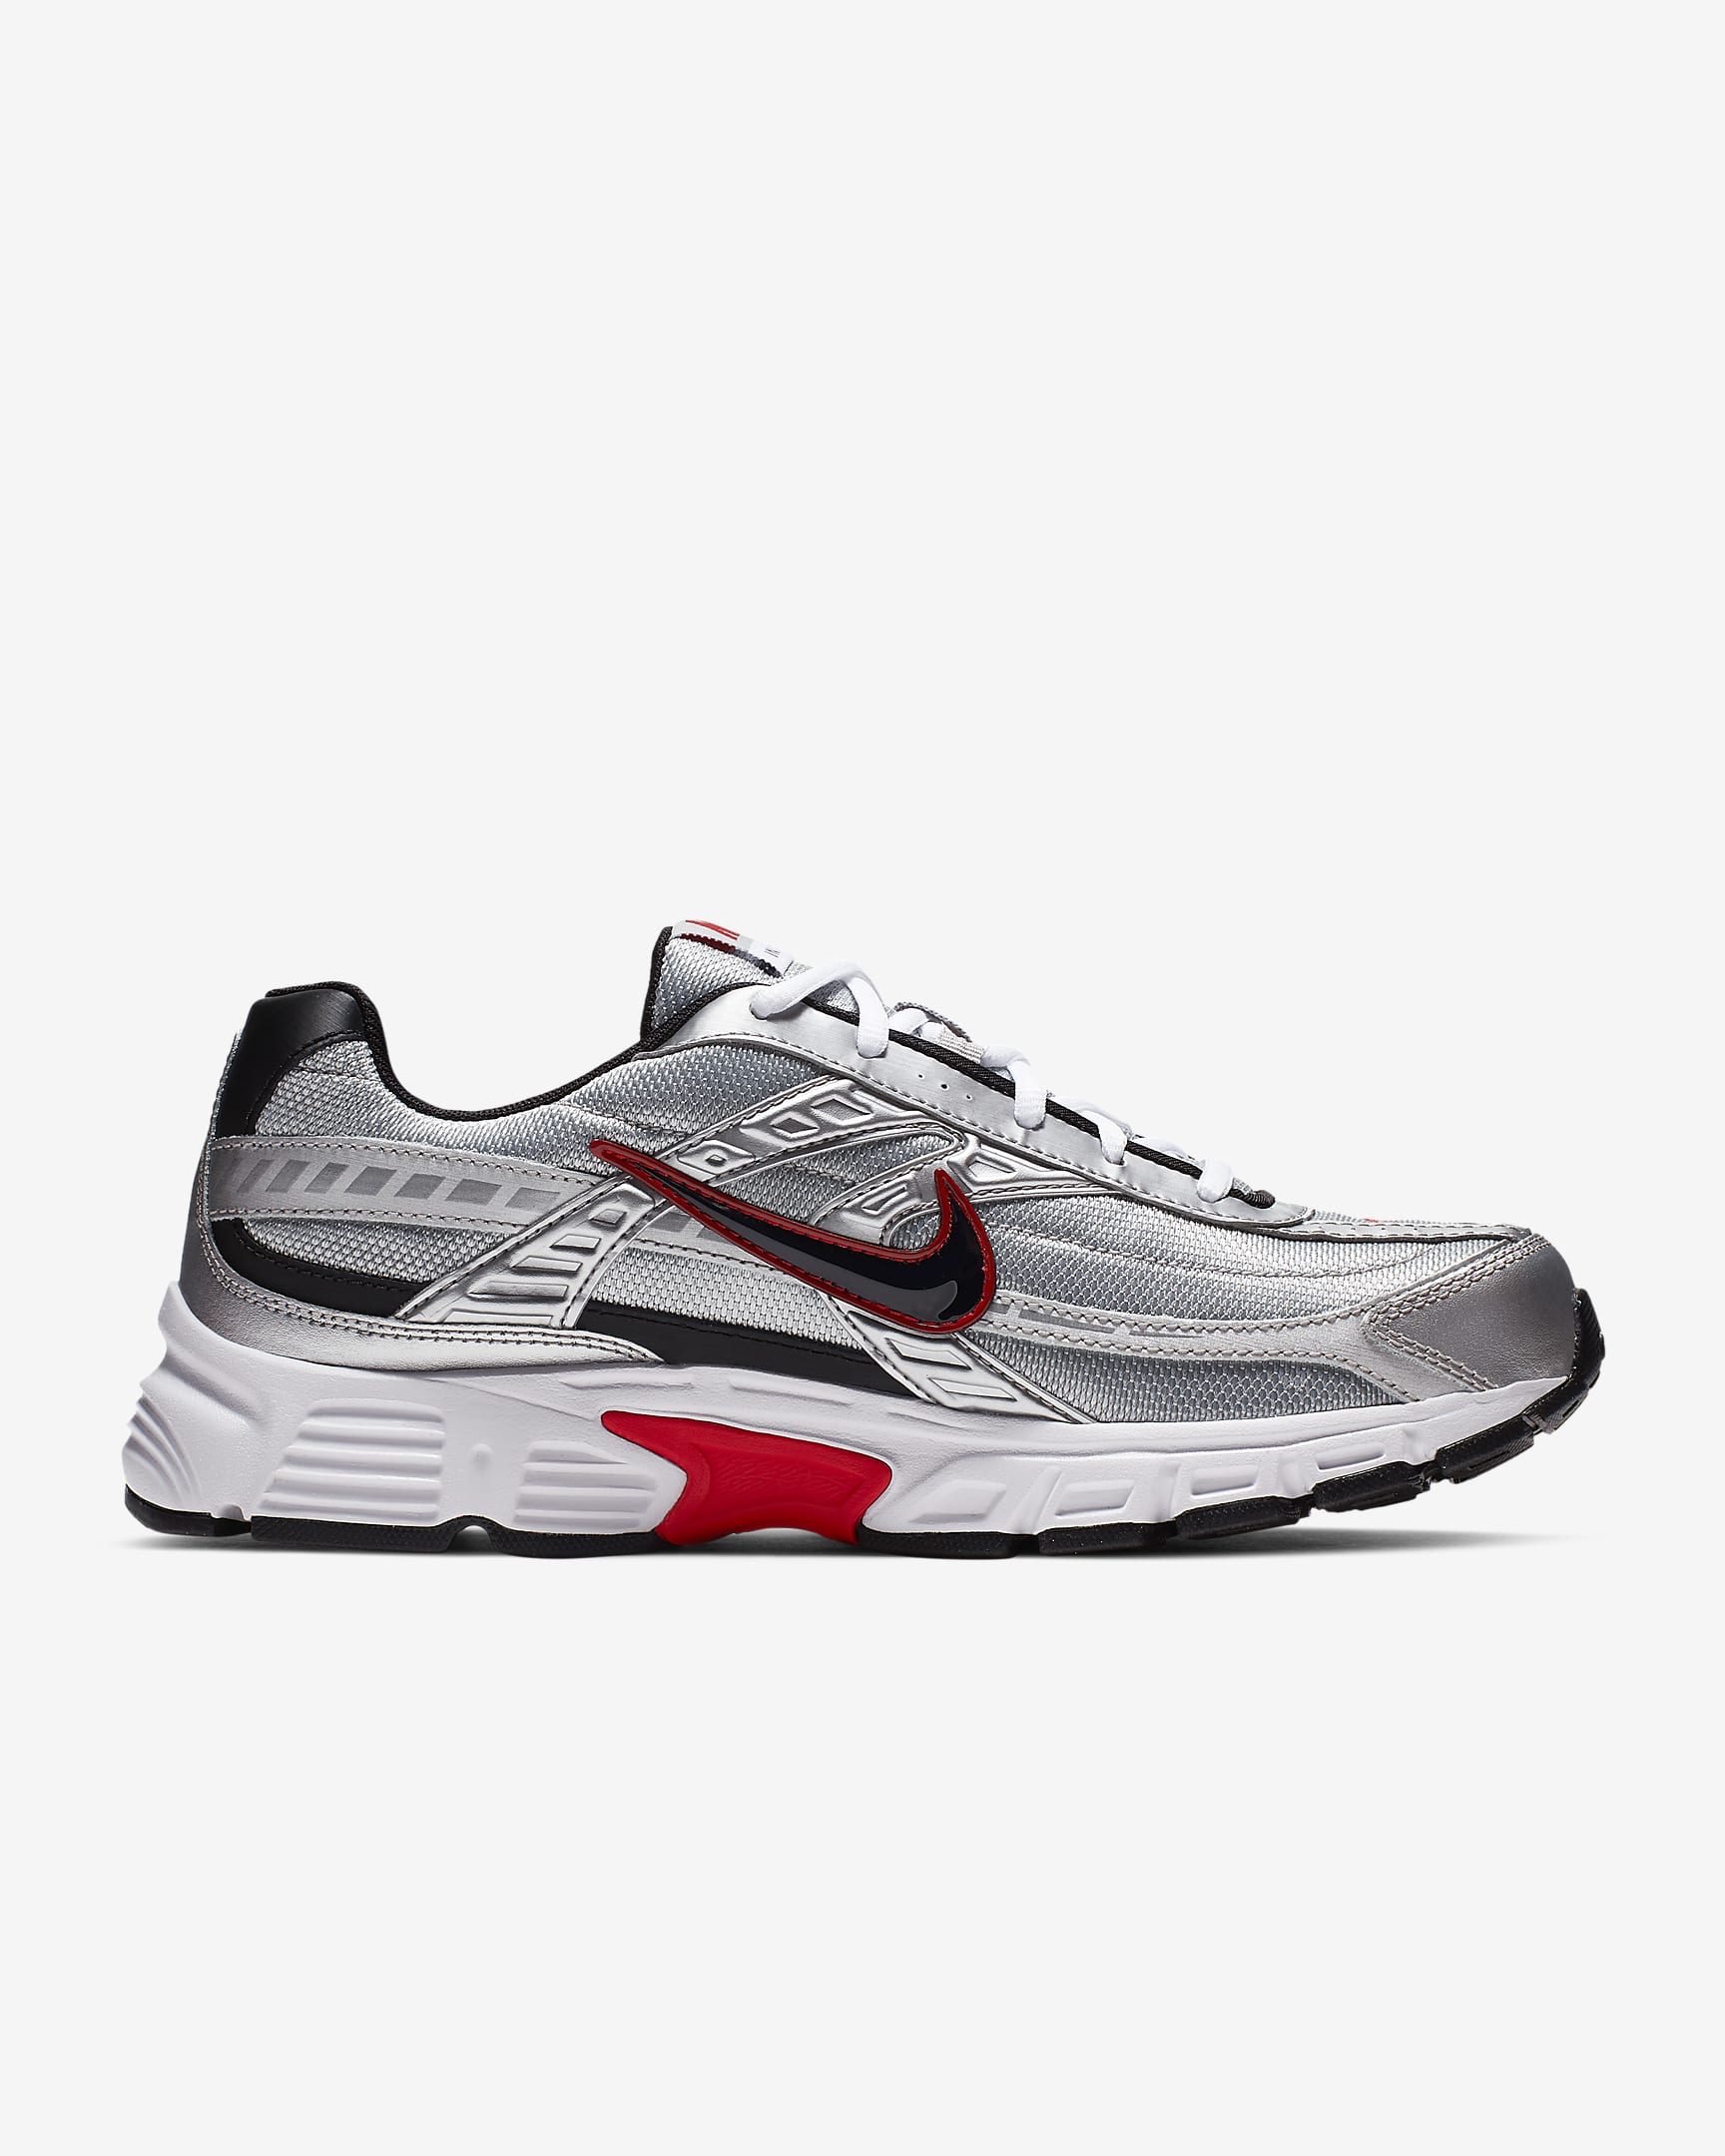 Nike Initiator Men's Running Shoe - Metallic Silver/White/Black